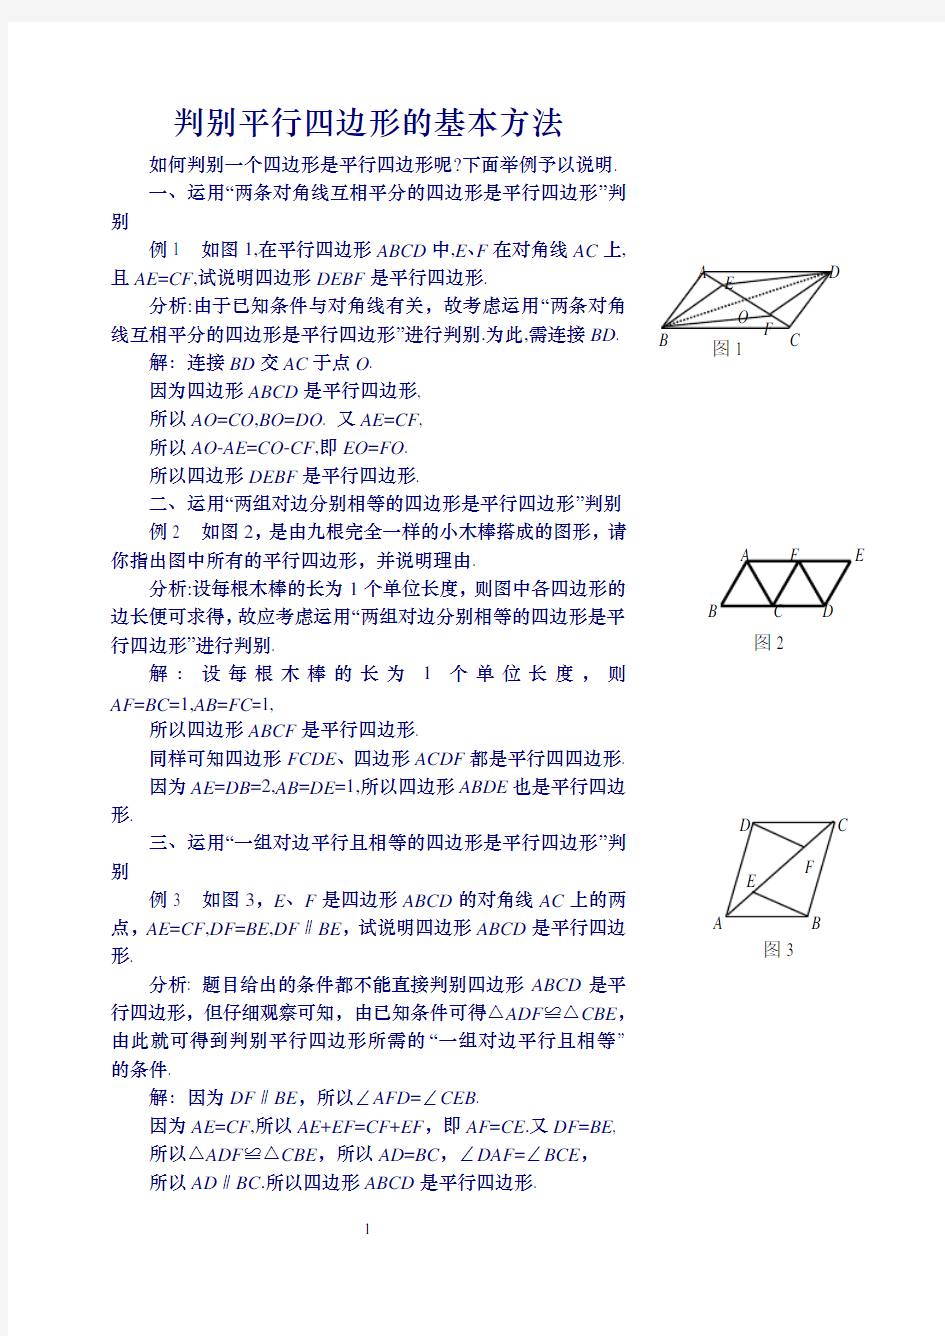 (完整版)判定平行四边形的五种方法